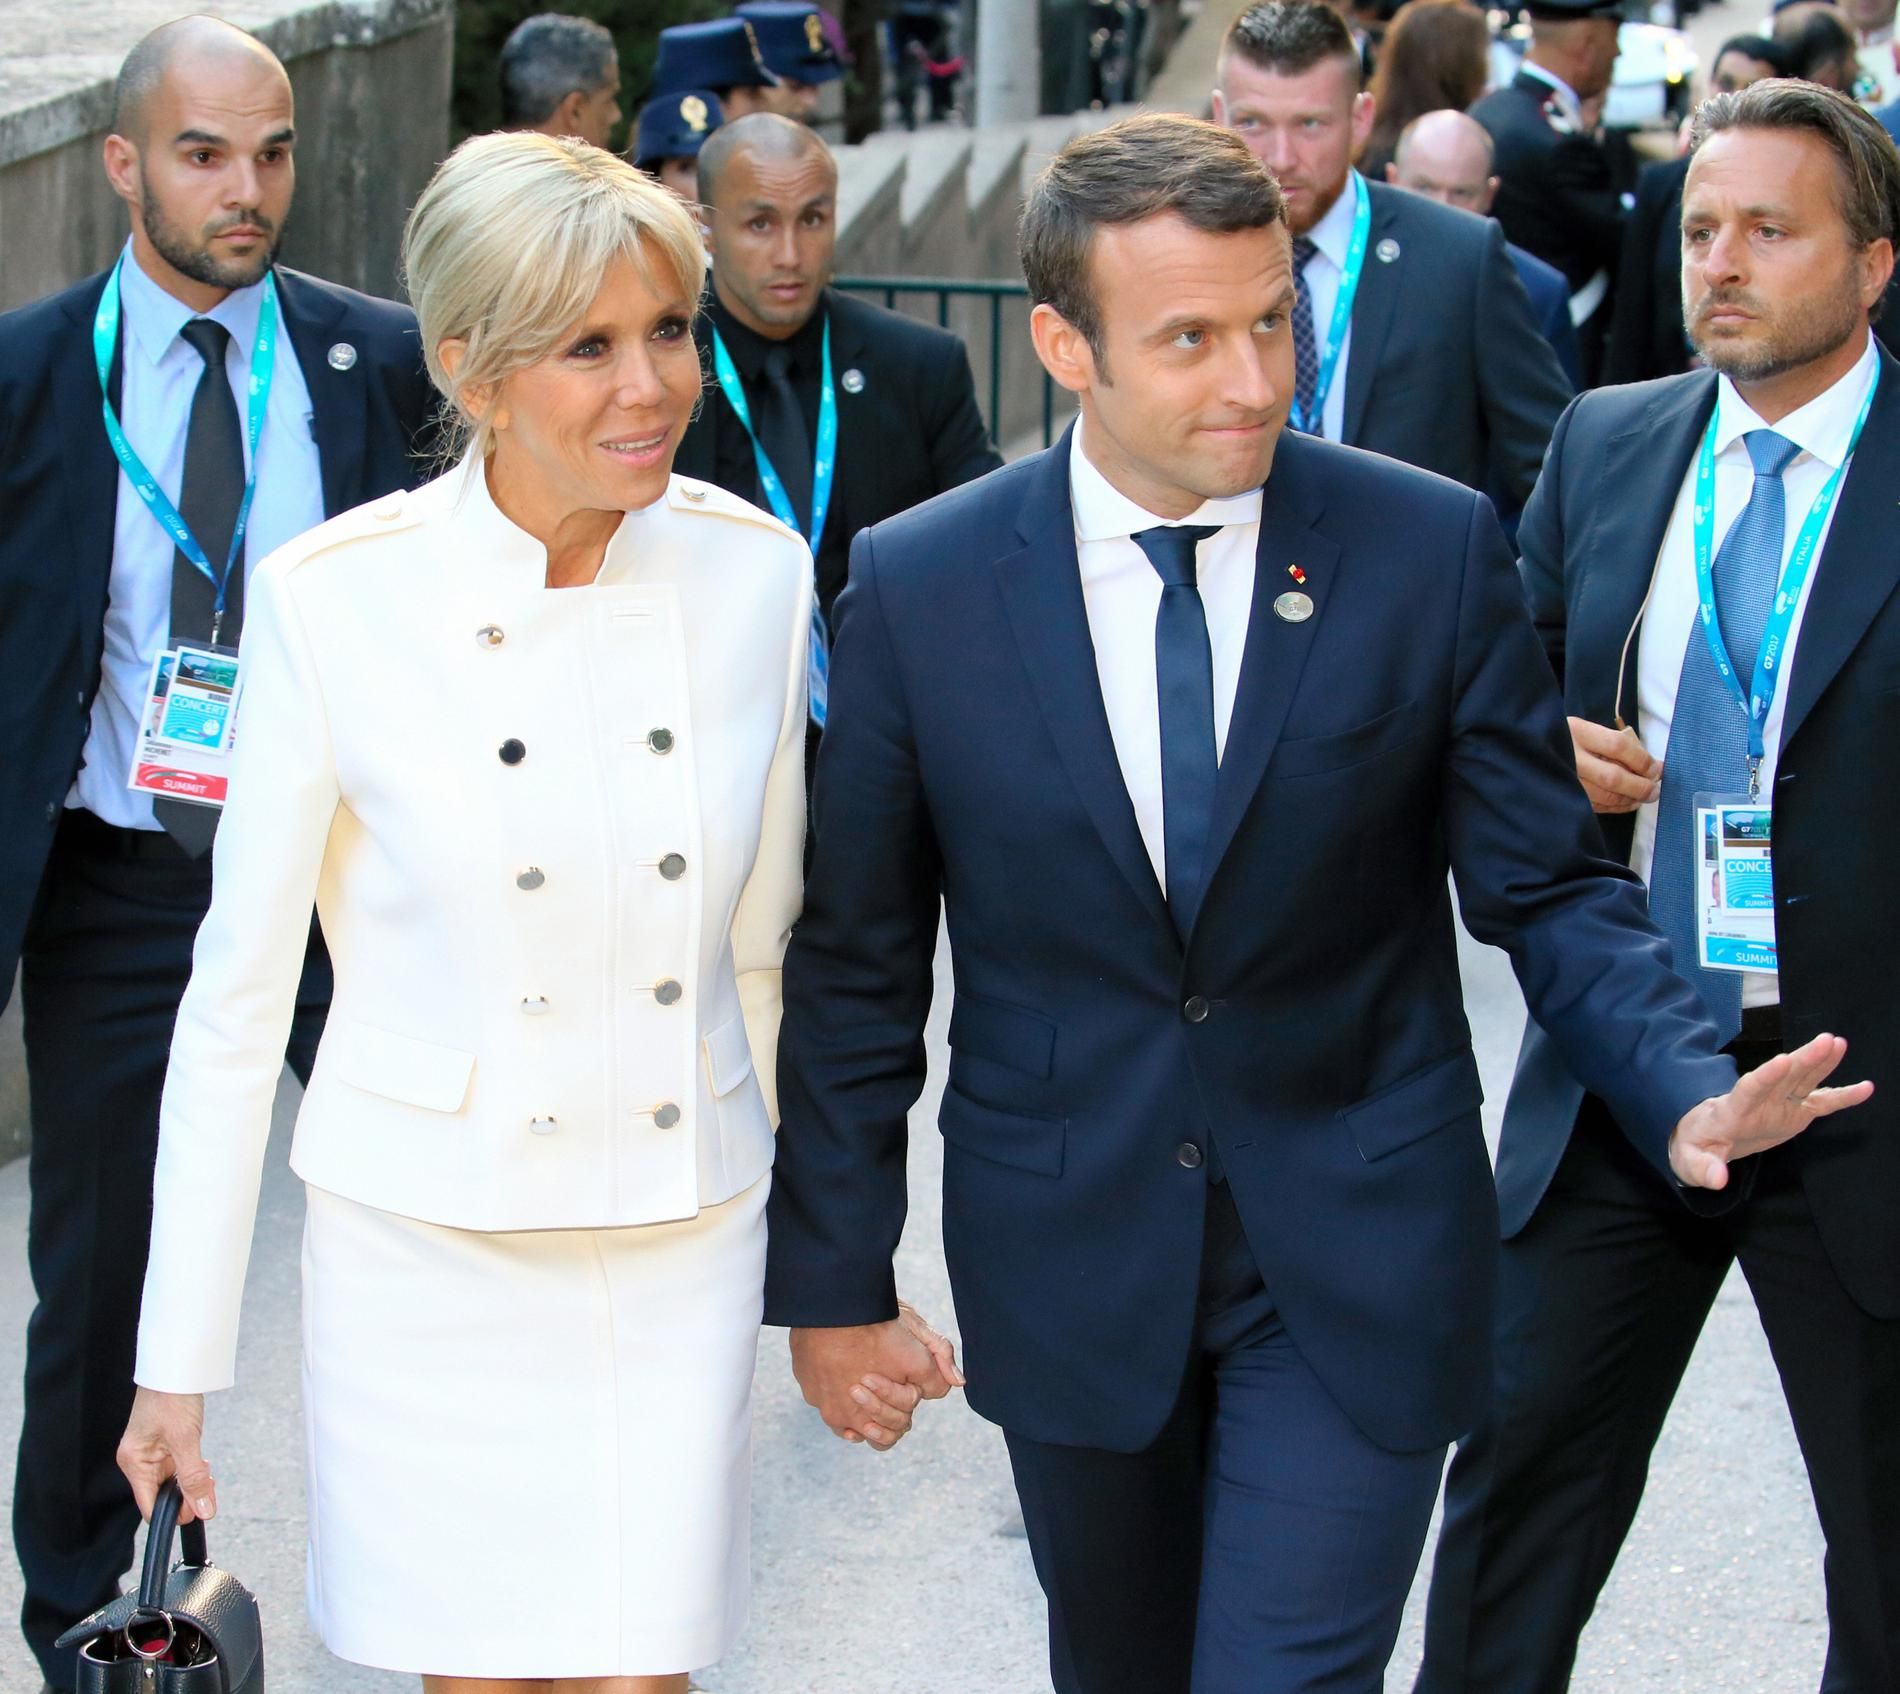 Le président Emmanuel Macron et son épouse Brigitte Macron | Photo : Getty Images 